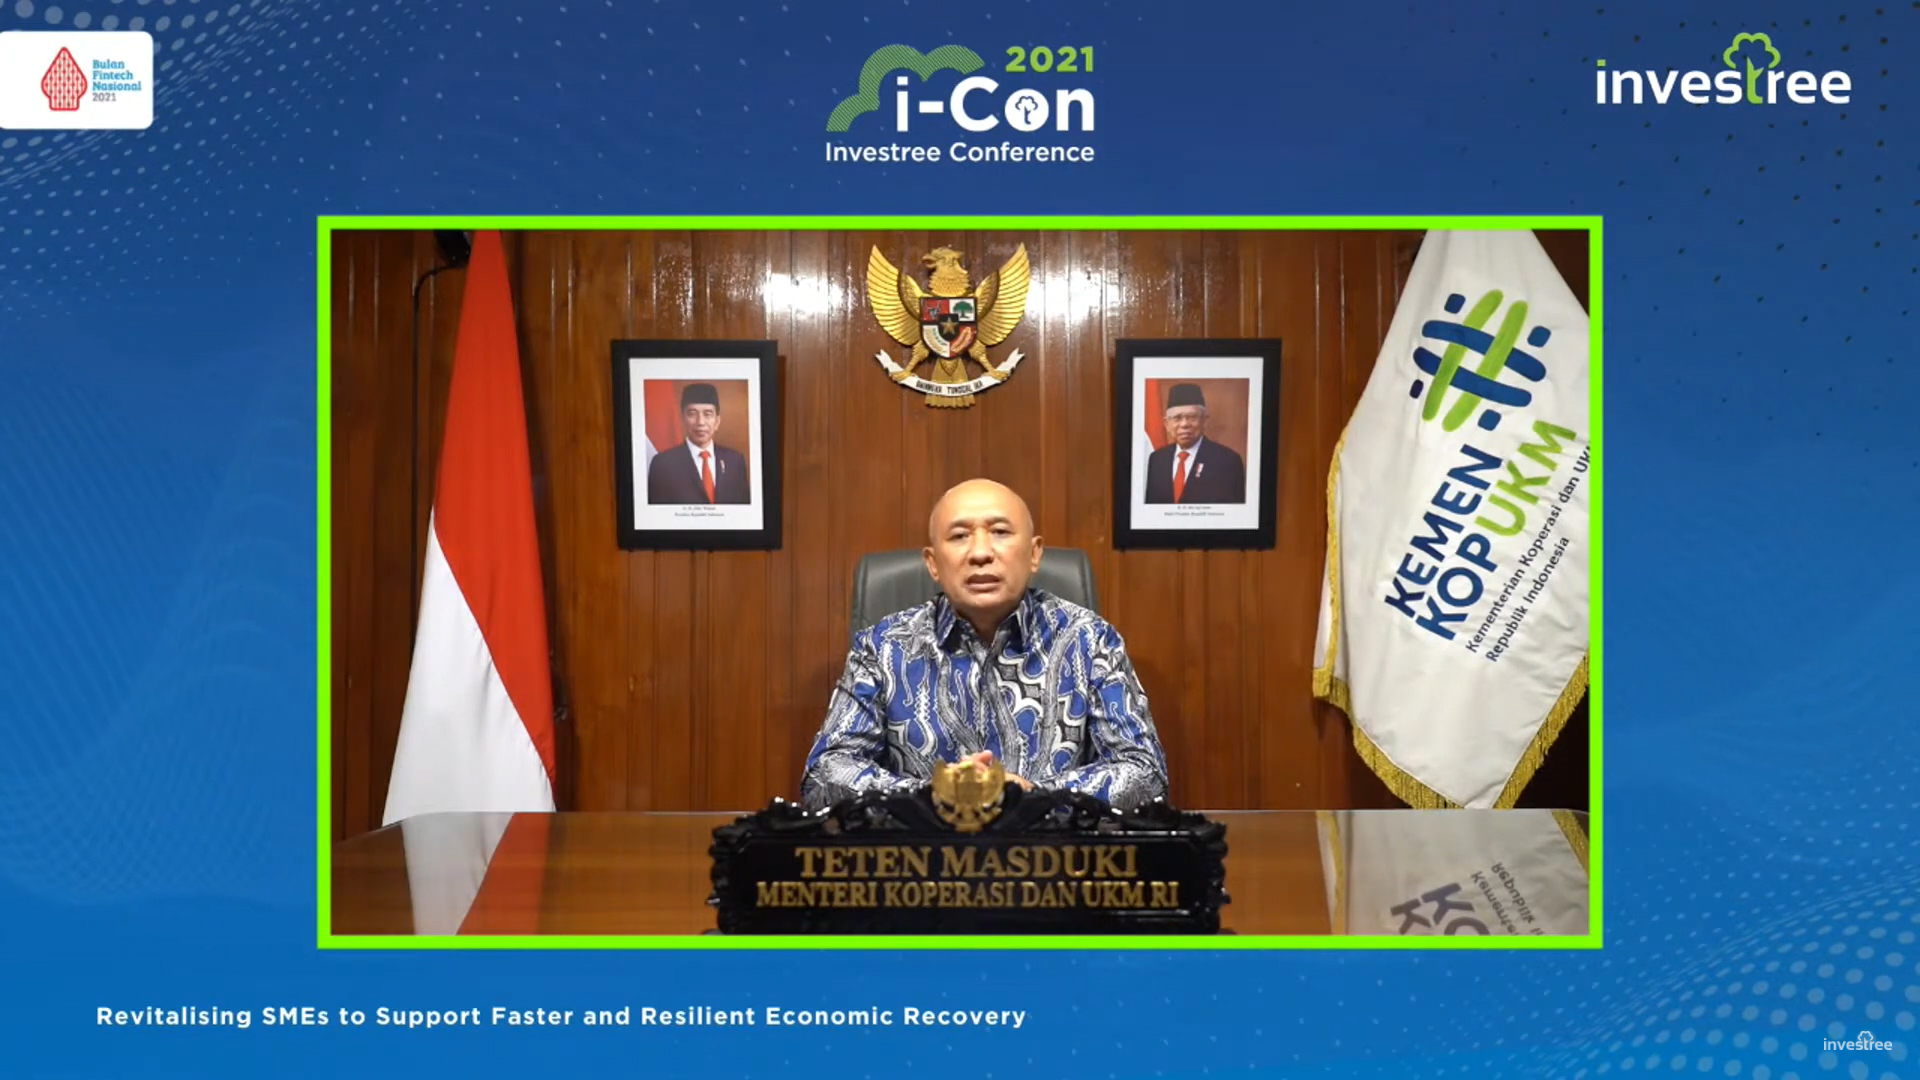 Teten Masduki, Menteri Koperasi dan Usaha Kecil dan Menengah Indonesia